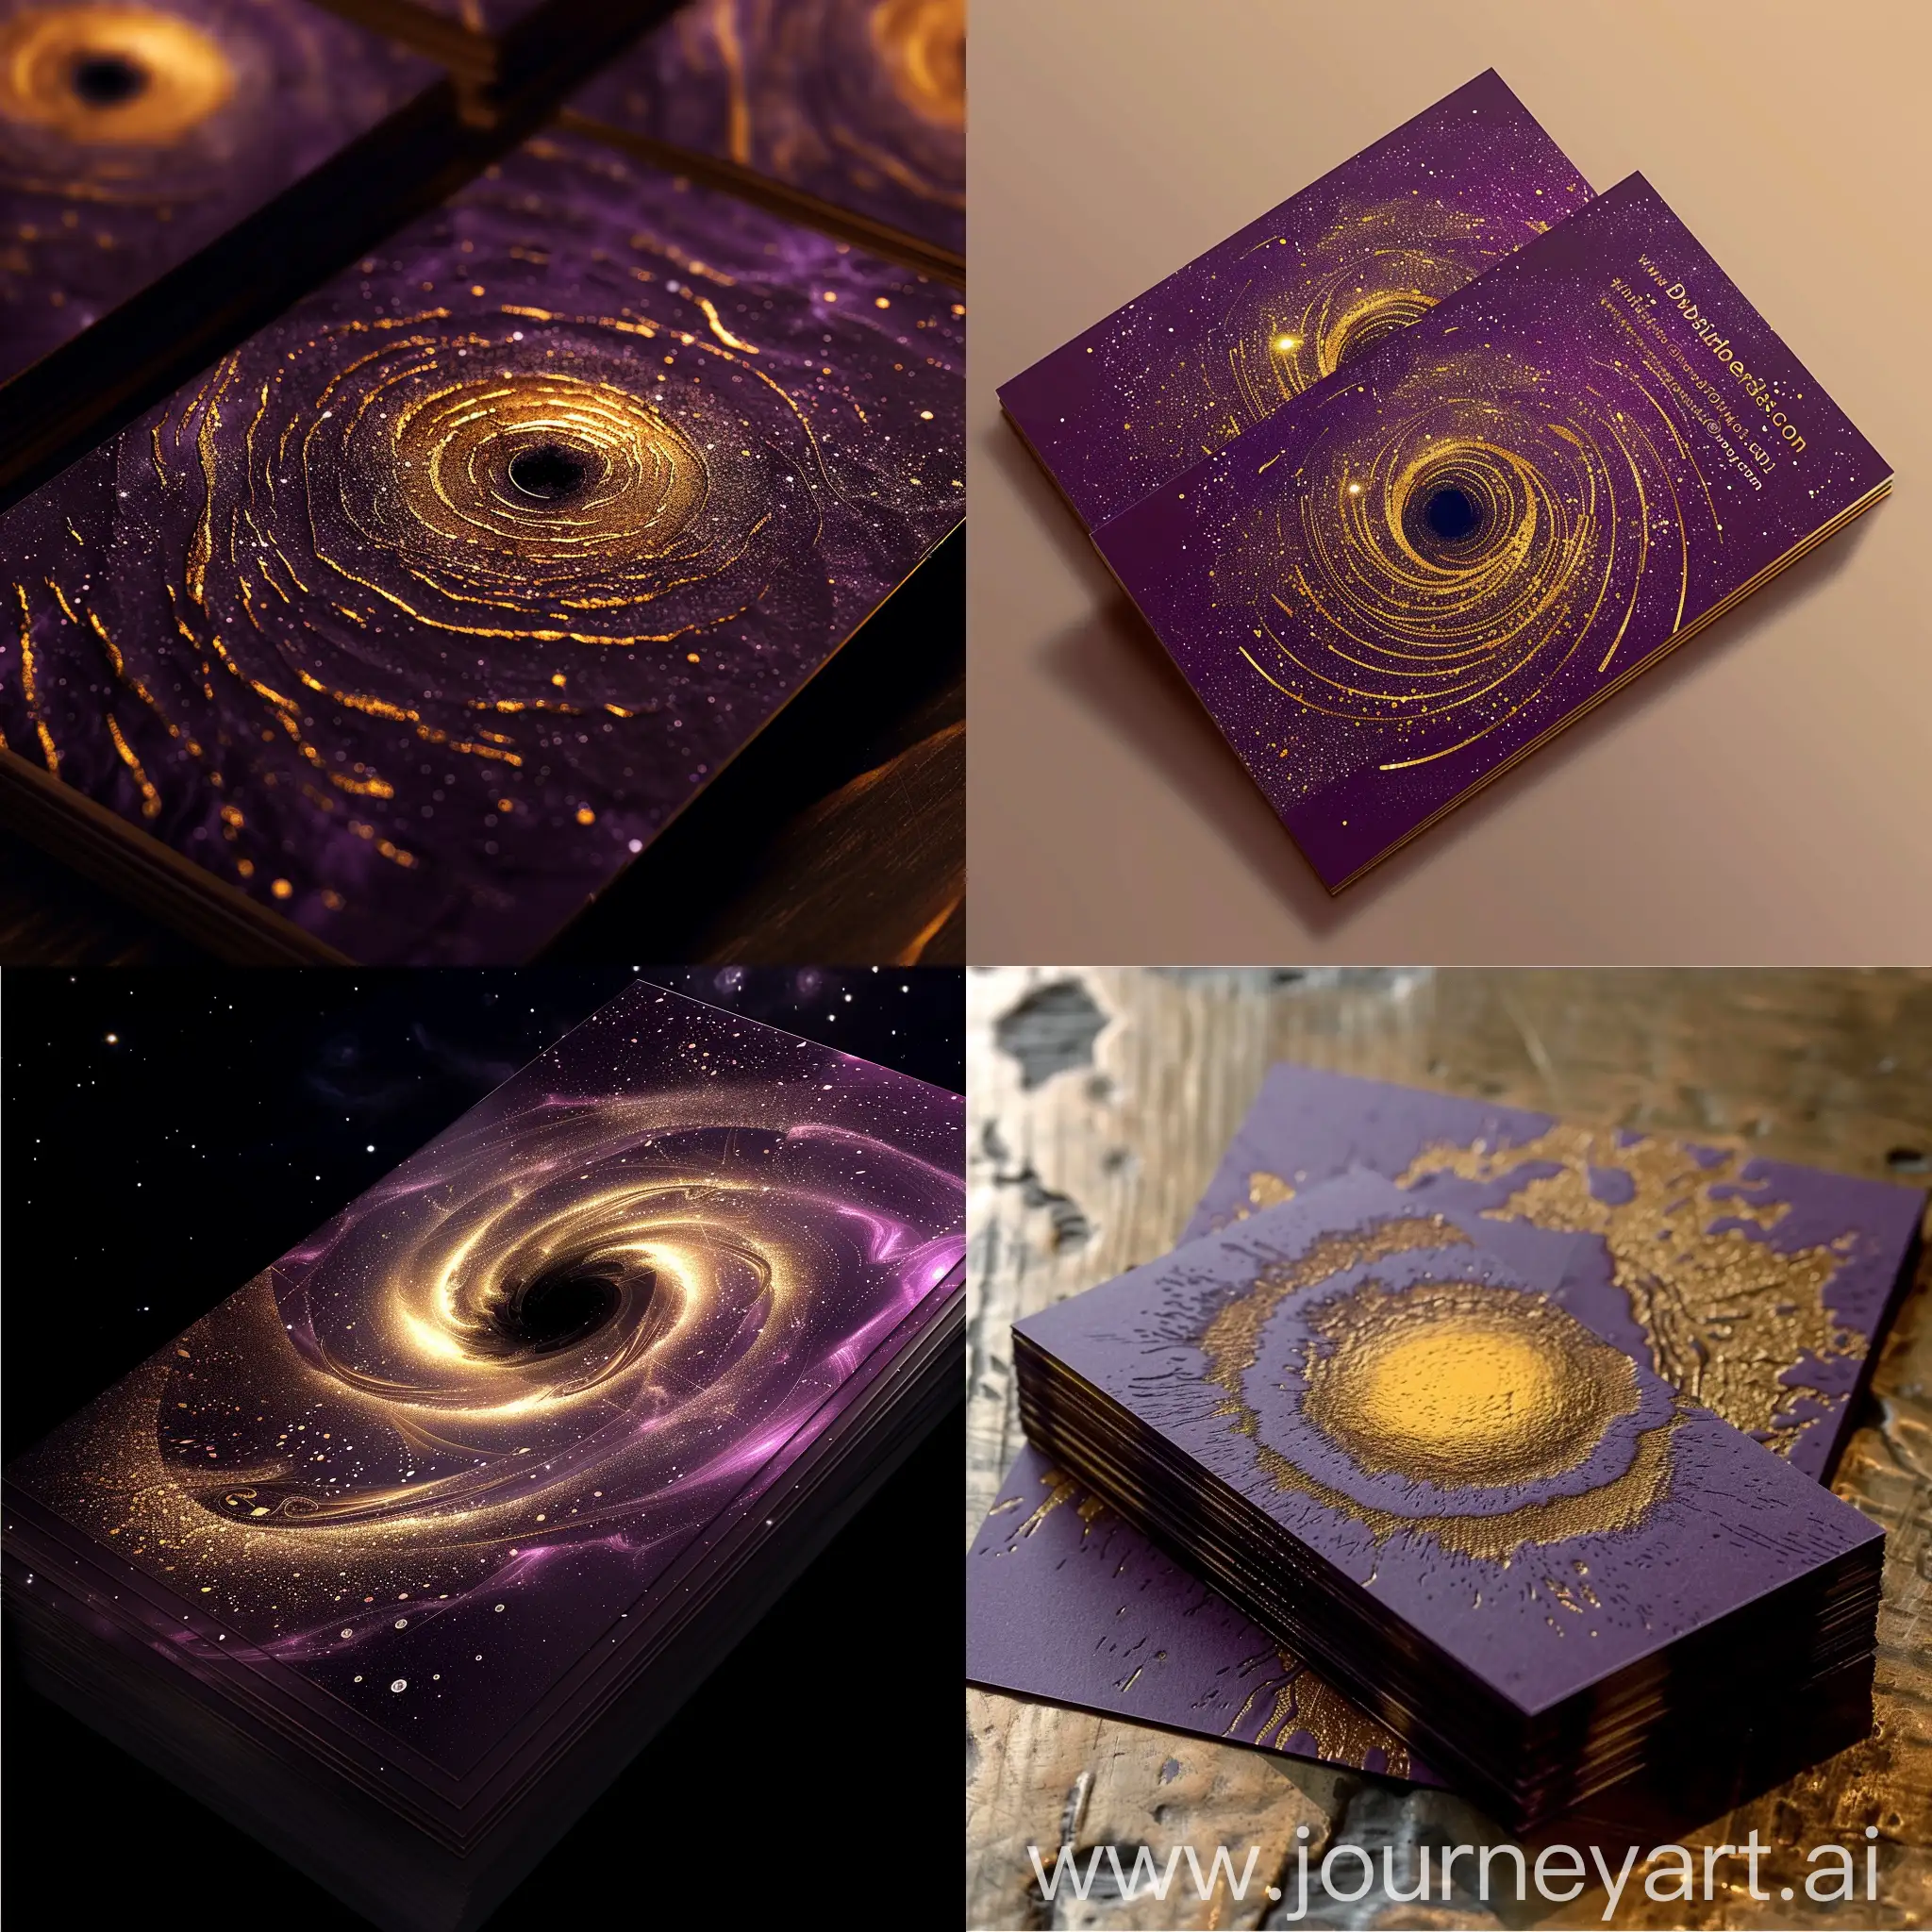 Визитная карточка без слов, в фиолетово золотом цвете и с изображением чёрной дыры.